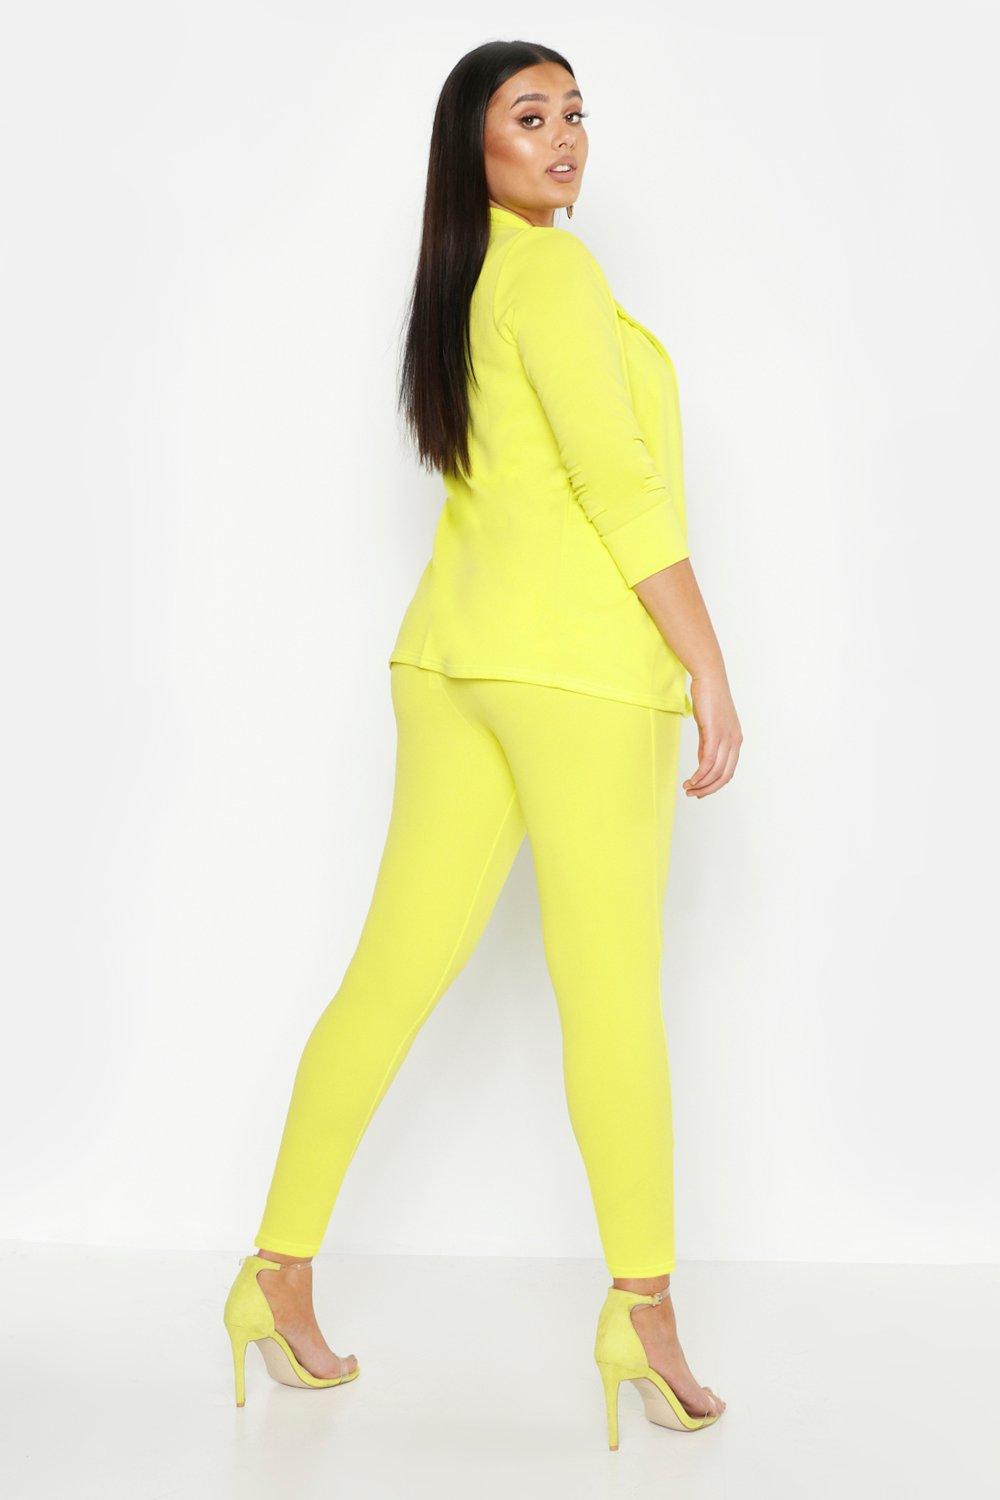 Yellow Pant Suit for Women, Plus Size Pant Suit, Two Piece Suit